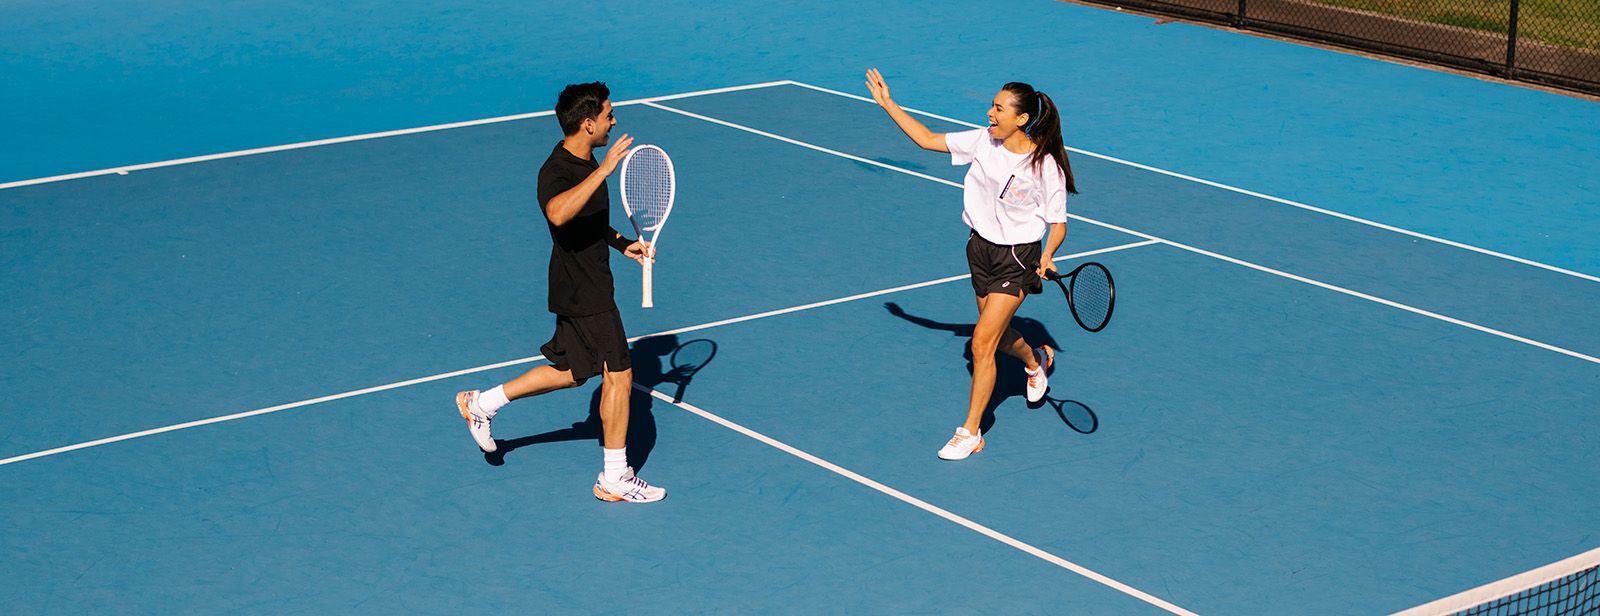 La moda en el tenis: qué ponerse para jugar al tenis